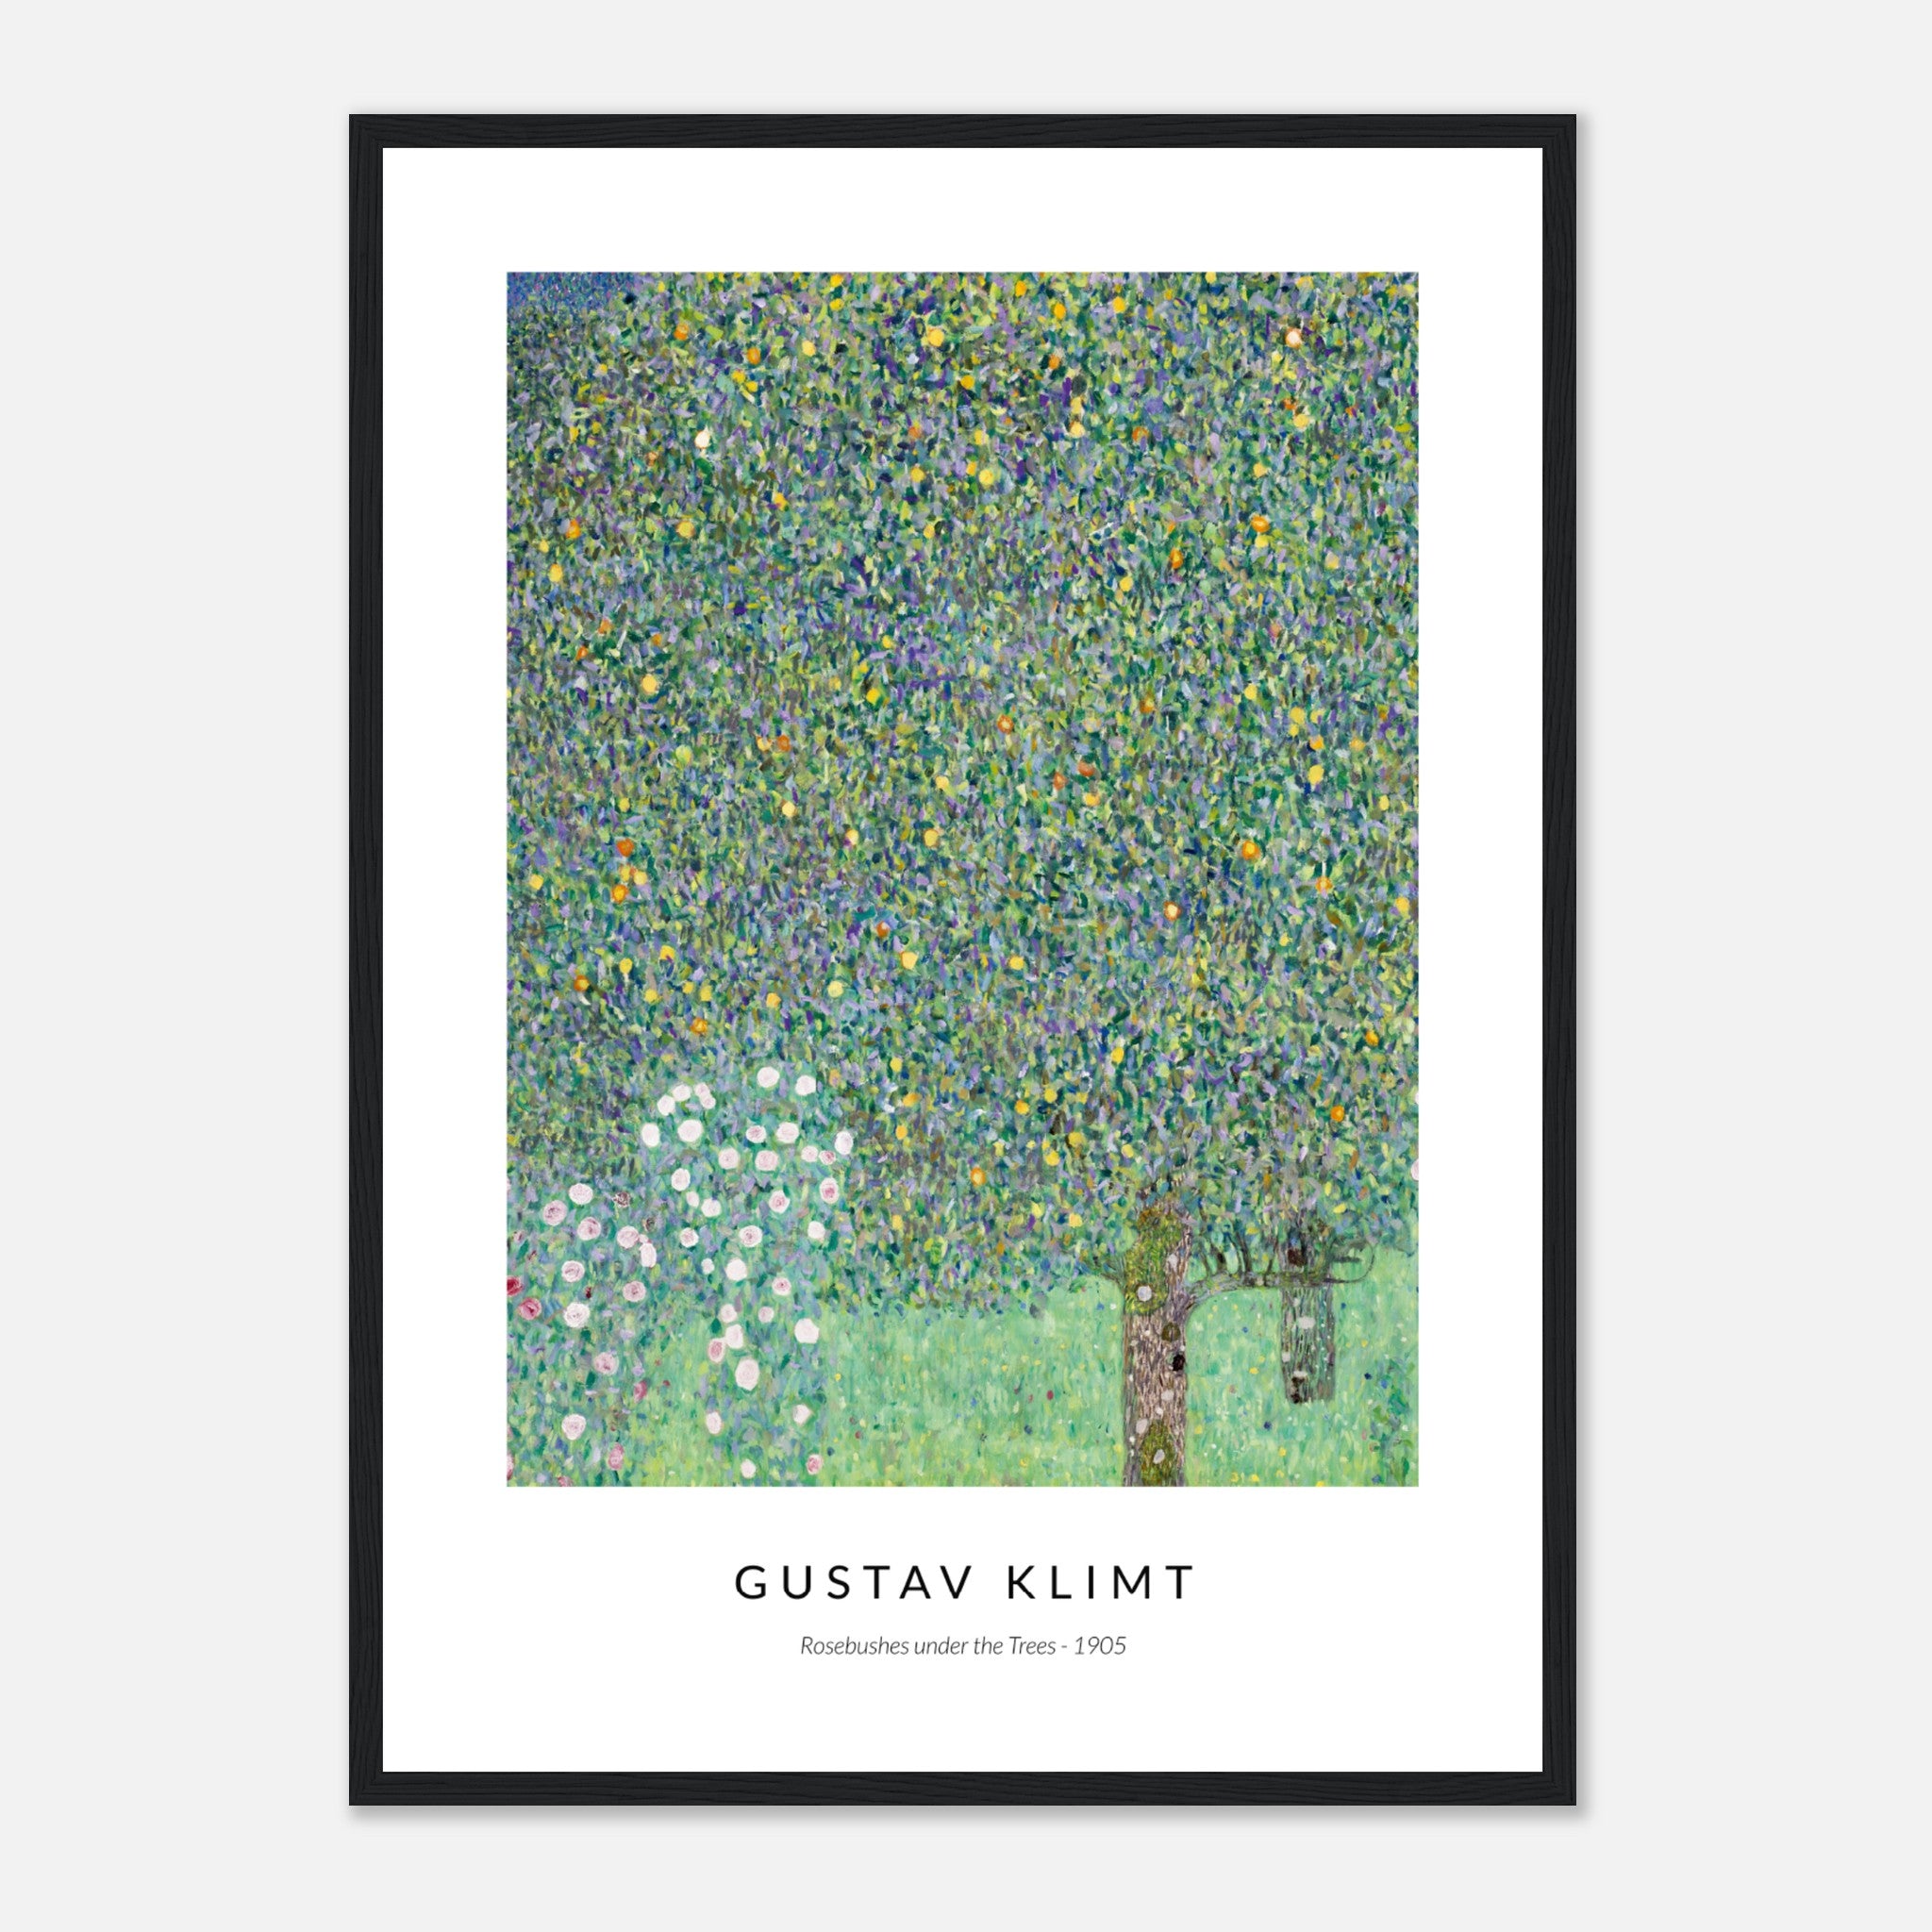 Rosebushes under the Trees by Gustav Klimt Poster